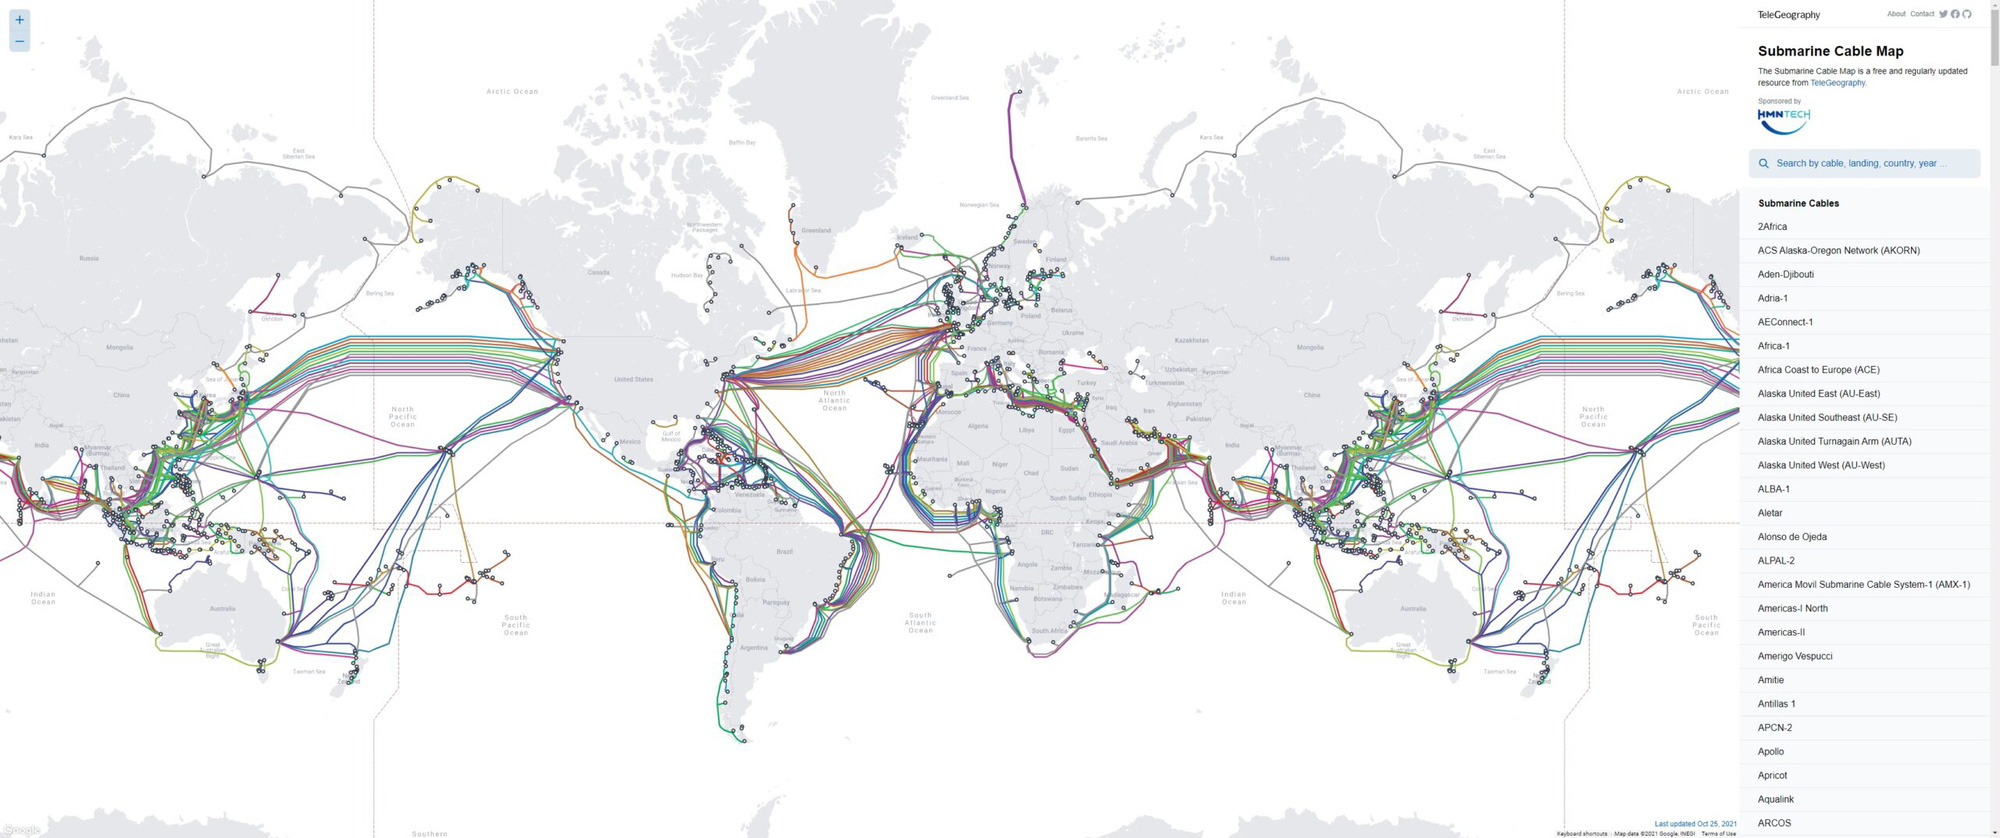 Những điều bạn cần biết về cáp quang - công nghệ giúp kết nối internet xuyên lục địa - Ảnh 1.